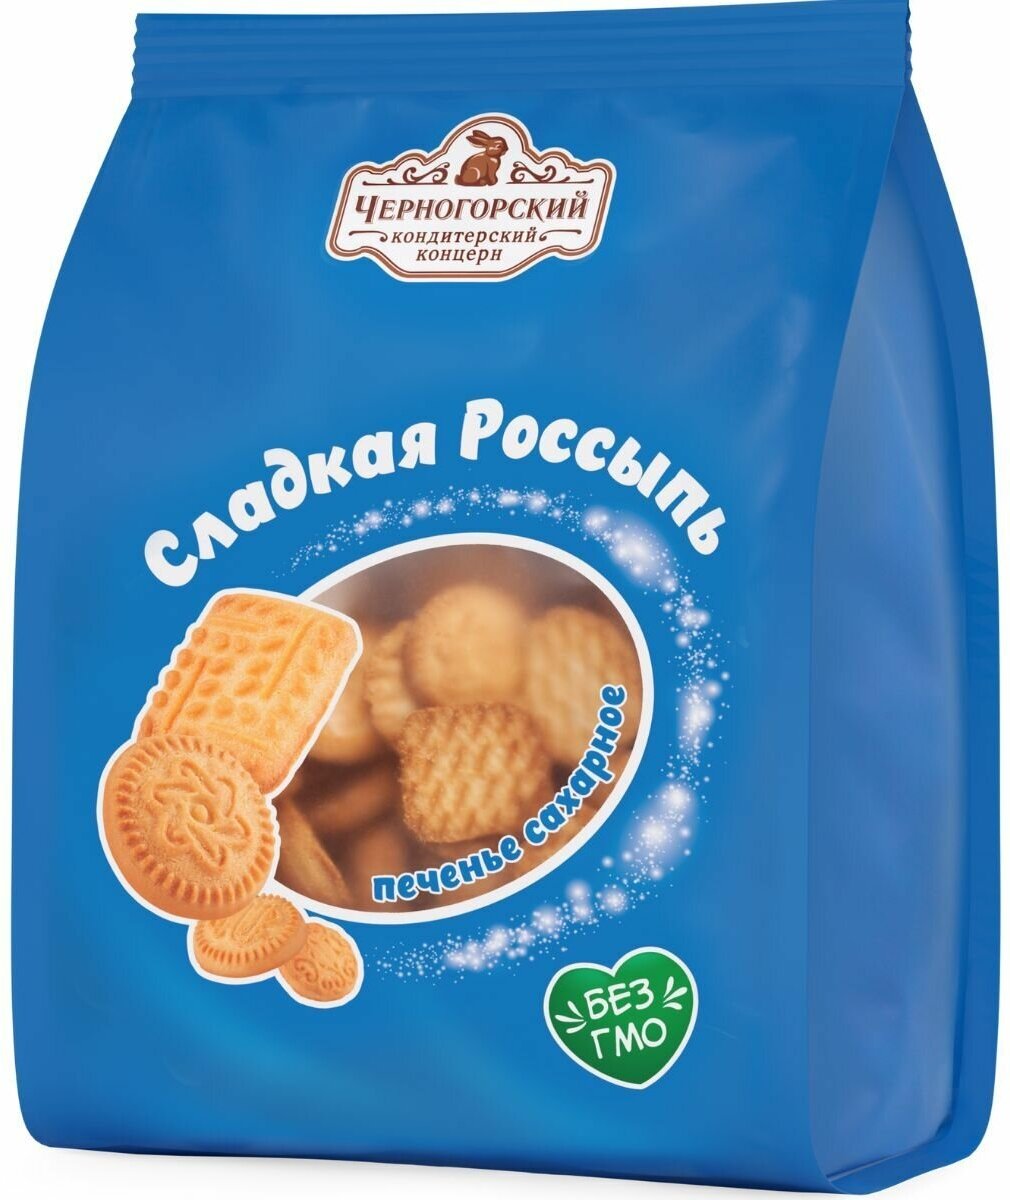 Печенье сахарное Черногорский сладкая россыпь цветной пакет 300 грамм - фотография № 4